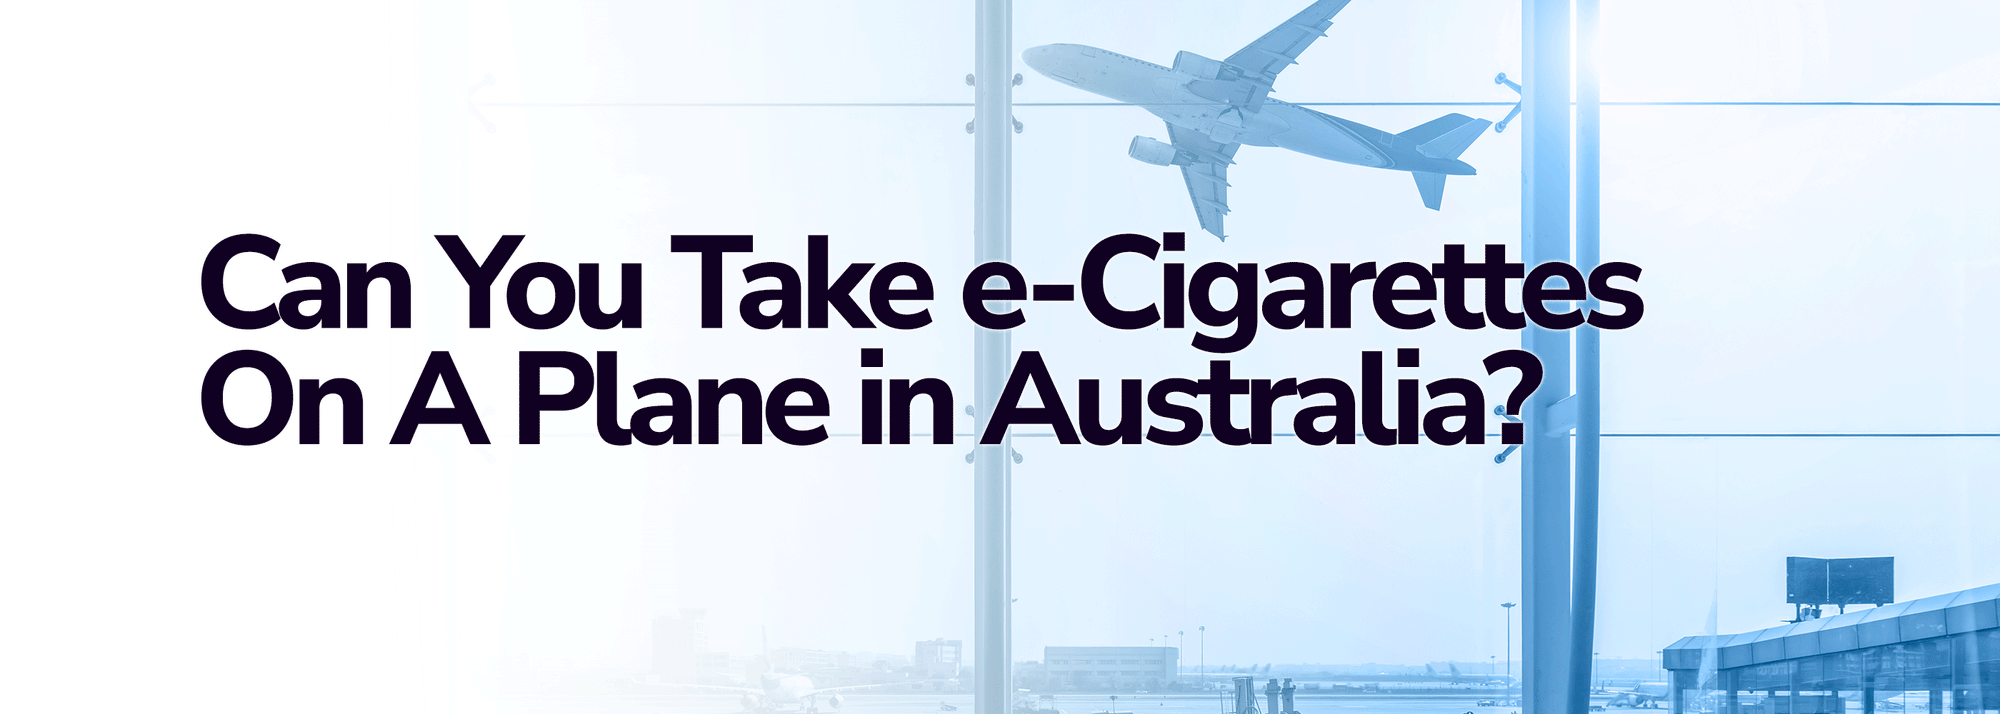 Can You Take E-Cigarettes On A Plane In Australia?